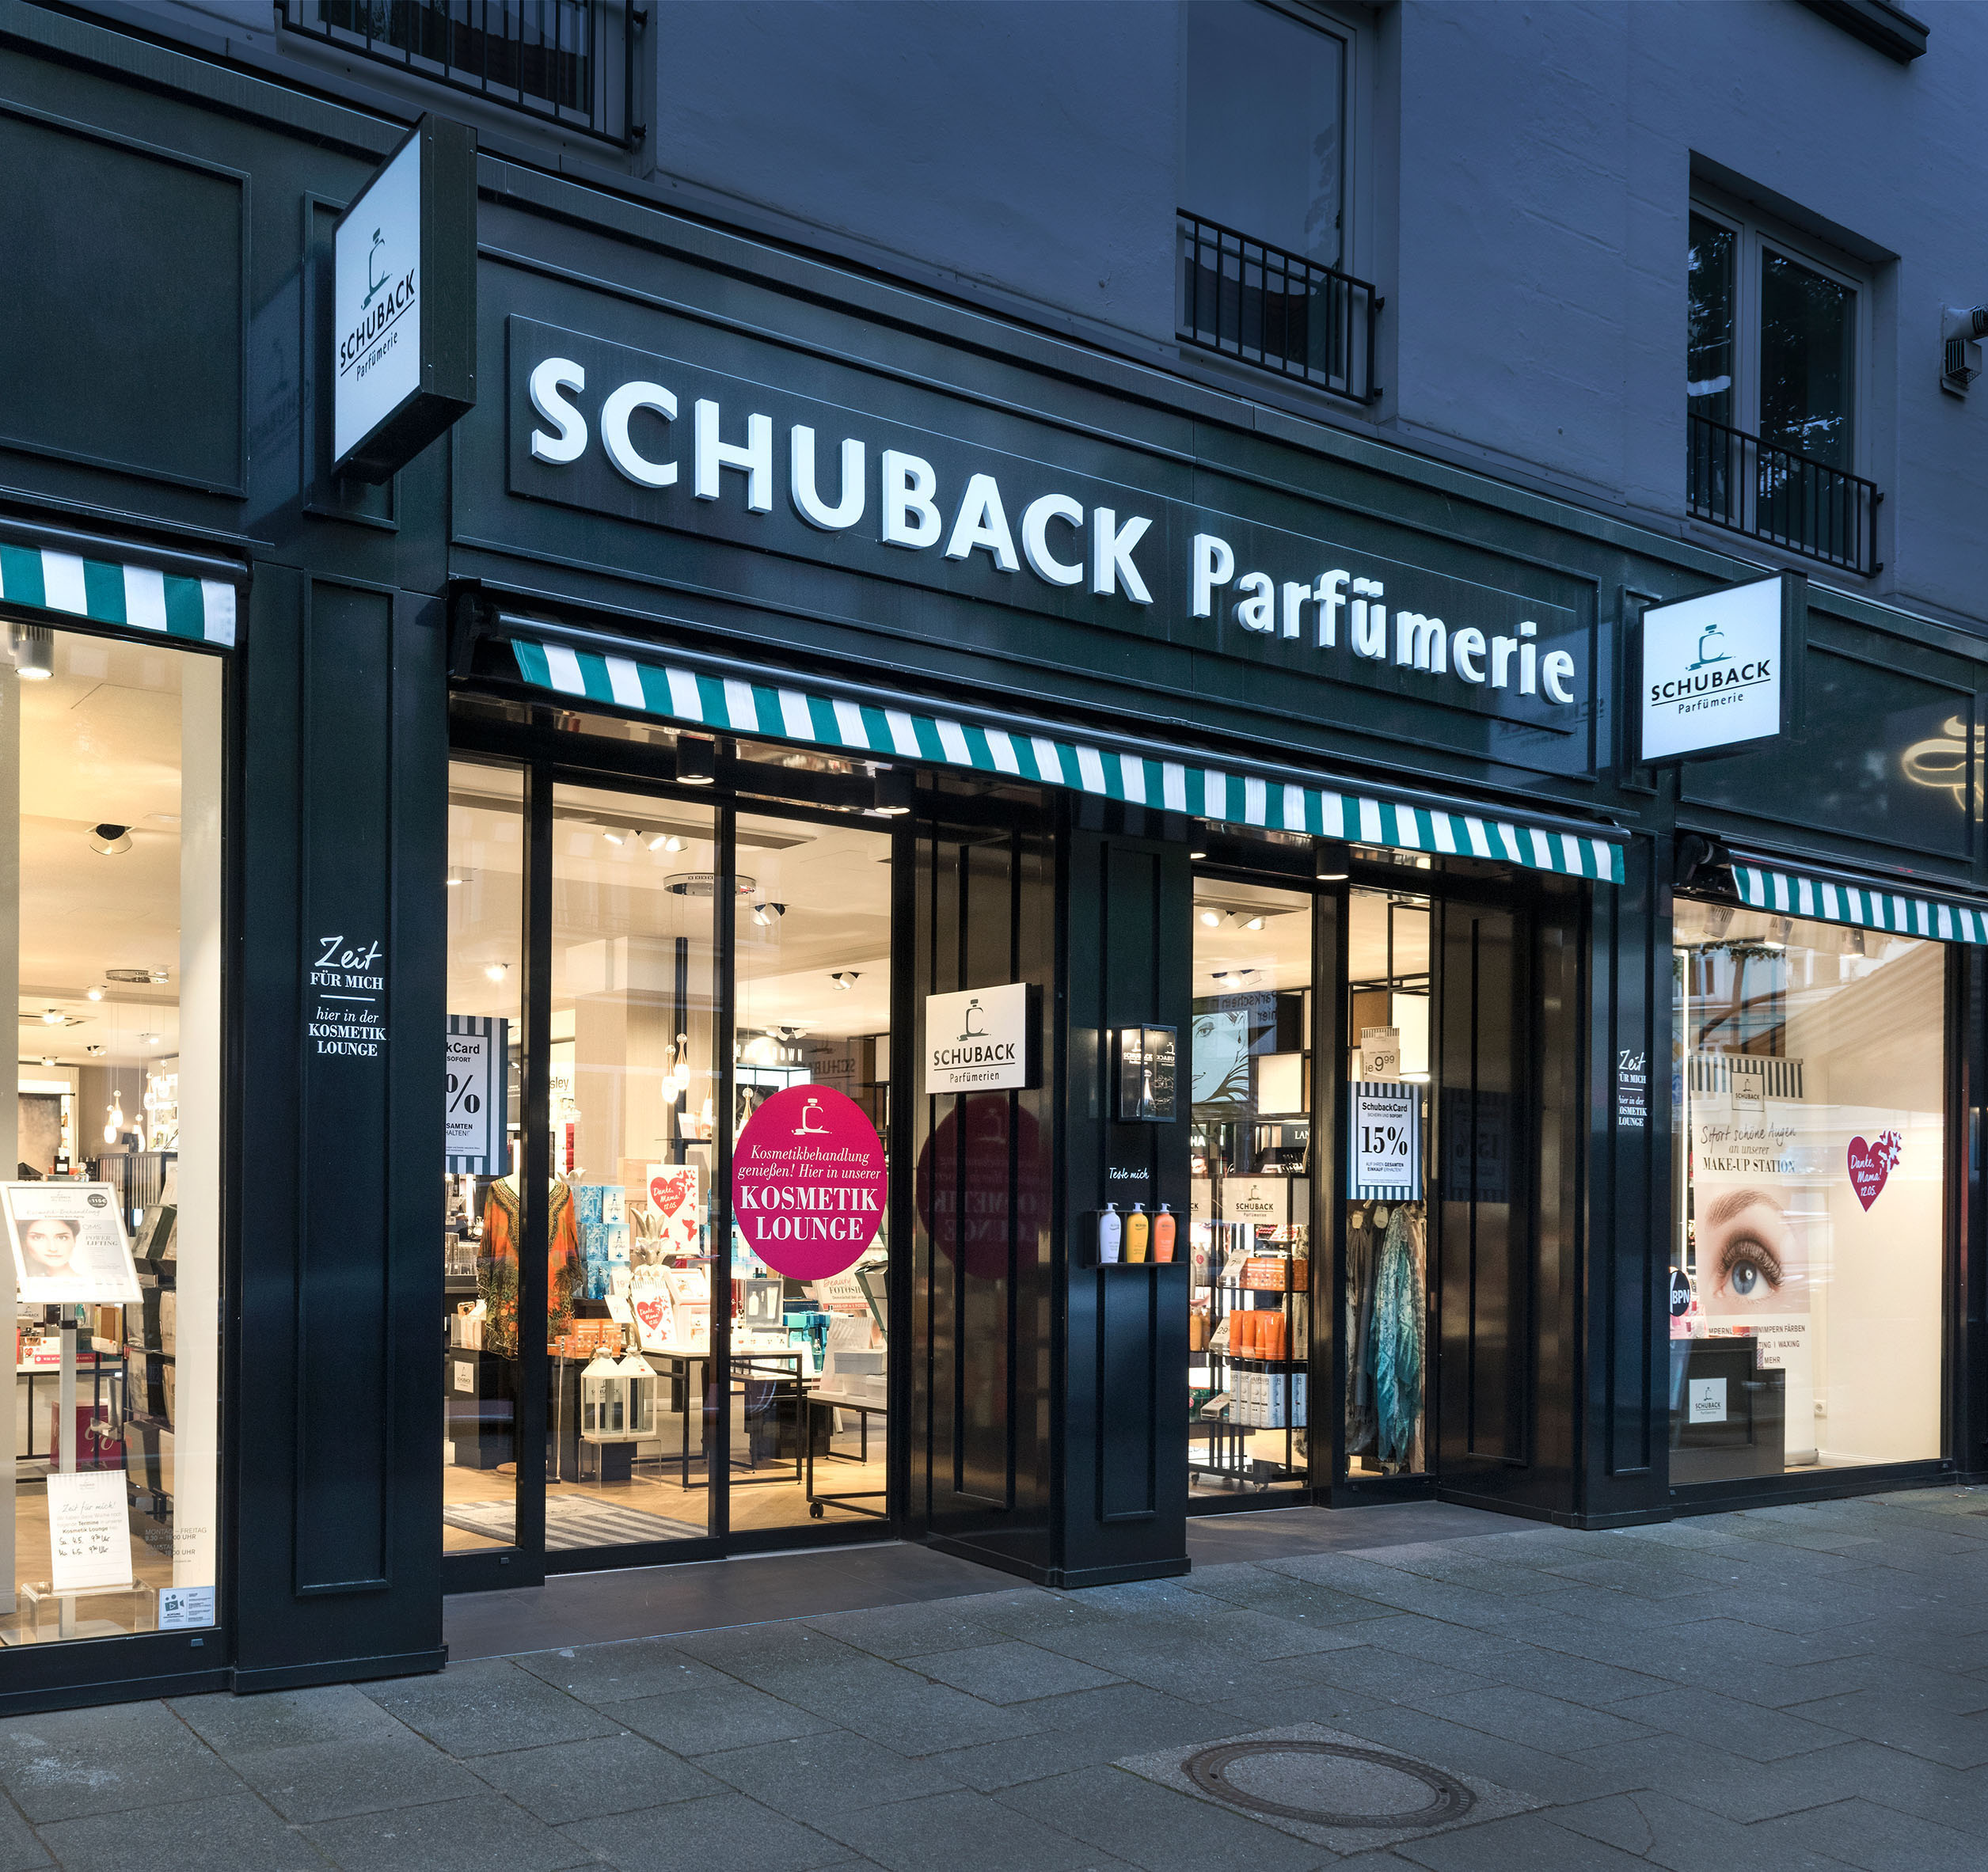 Parfümerie Schuback Fassade Neugestaltung Nette+Hartmann französischer Stil Hamburg Design Shopgestaltung Ladenbaukonzept